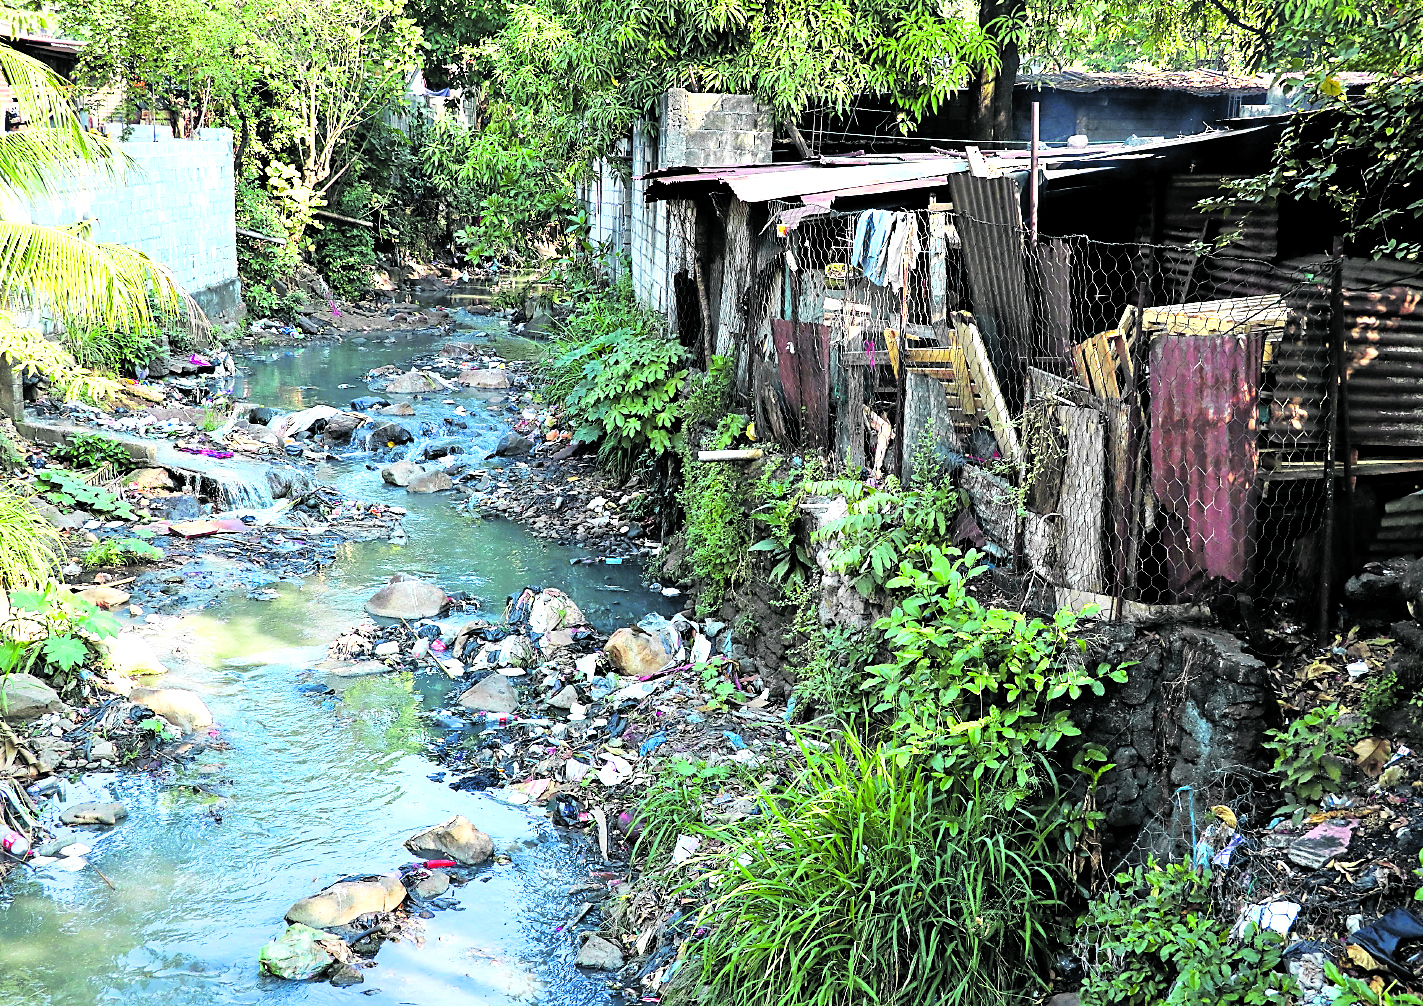 La mayoría de los ríos en el país están contaminados, reiteraron expertos.(Foto Prensa Libre: Hemeroteca PL)